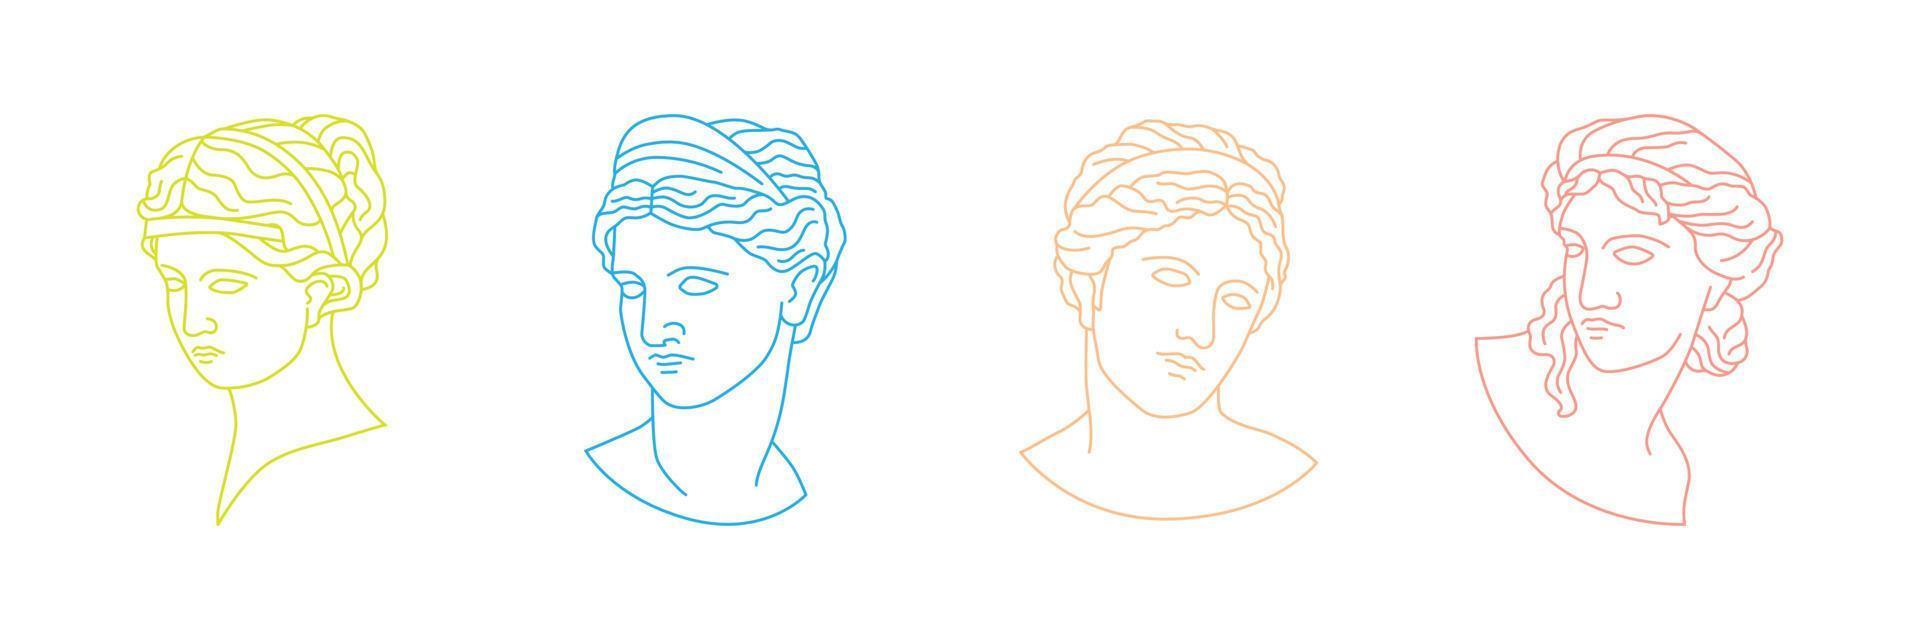 coleção de esculturas de retratos gregos e romanos em ilustrações desenhadas à mão vetor